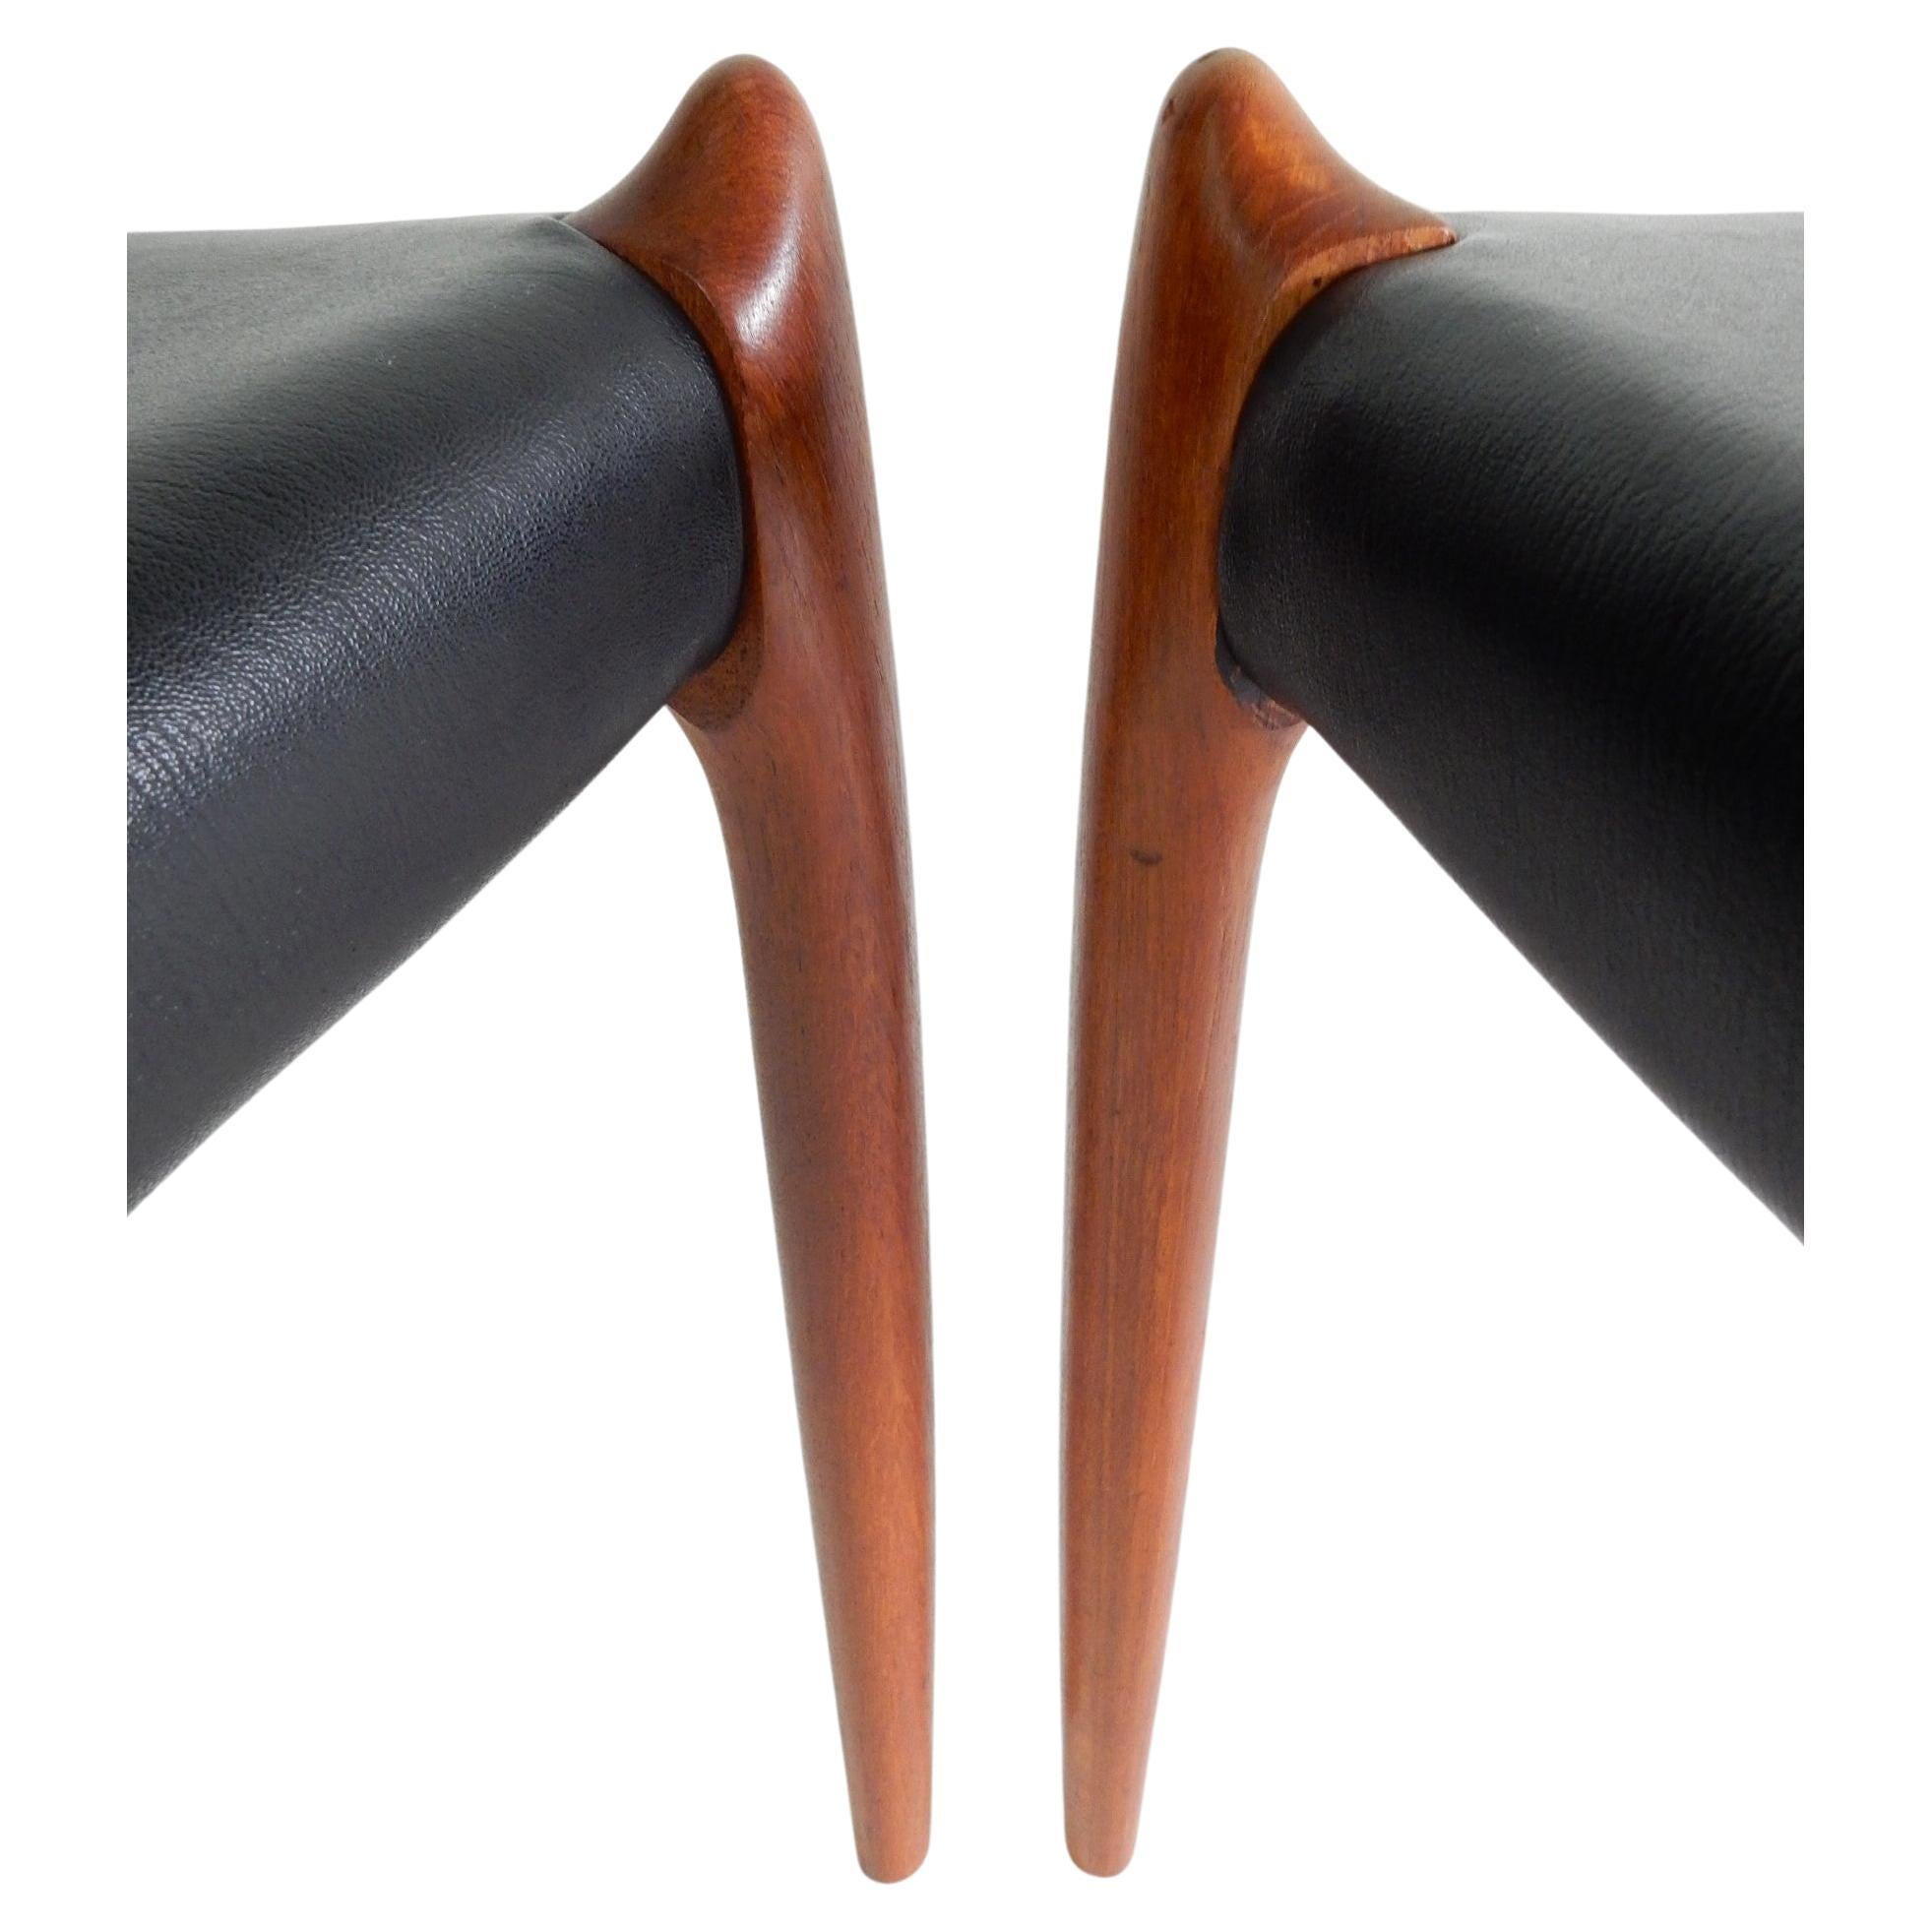 Fabuleuse paire de chaises de salle à manger Niels Design/One modèle 78 avec structure en teck sculpté et magnifique dossier incurvé. Sièges en cuir noir d'origine.
Les deux sont signés sur le bas du cadre, comme indiqué sur la photo. Nettoyé et